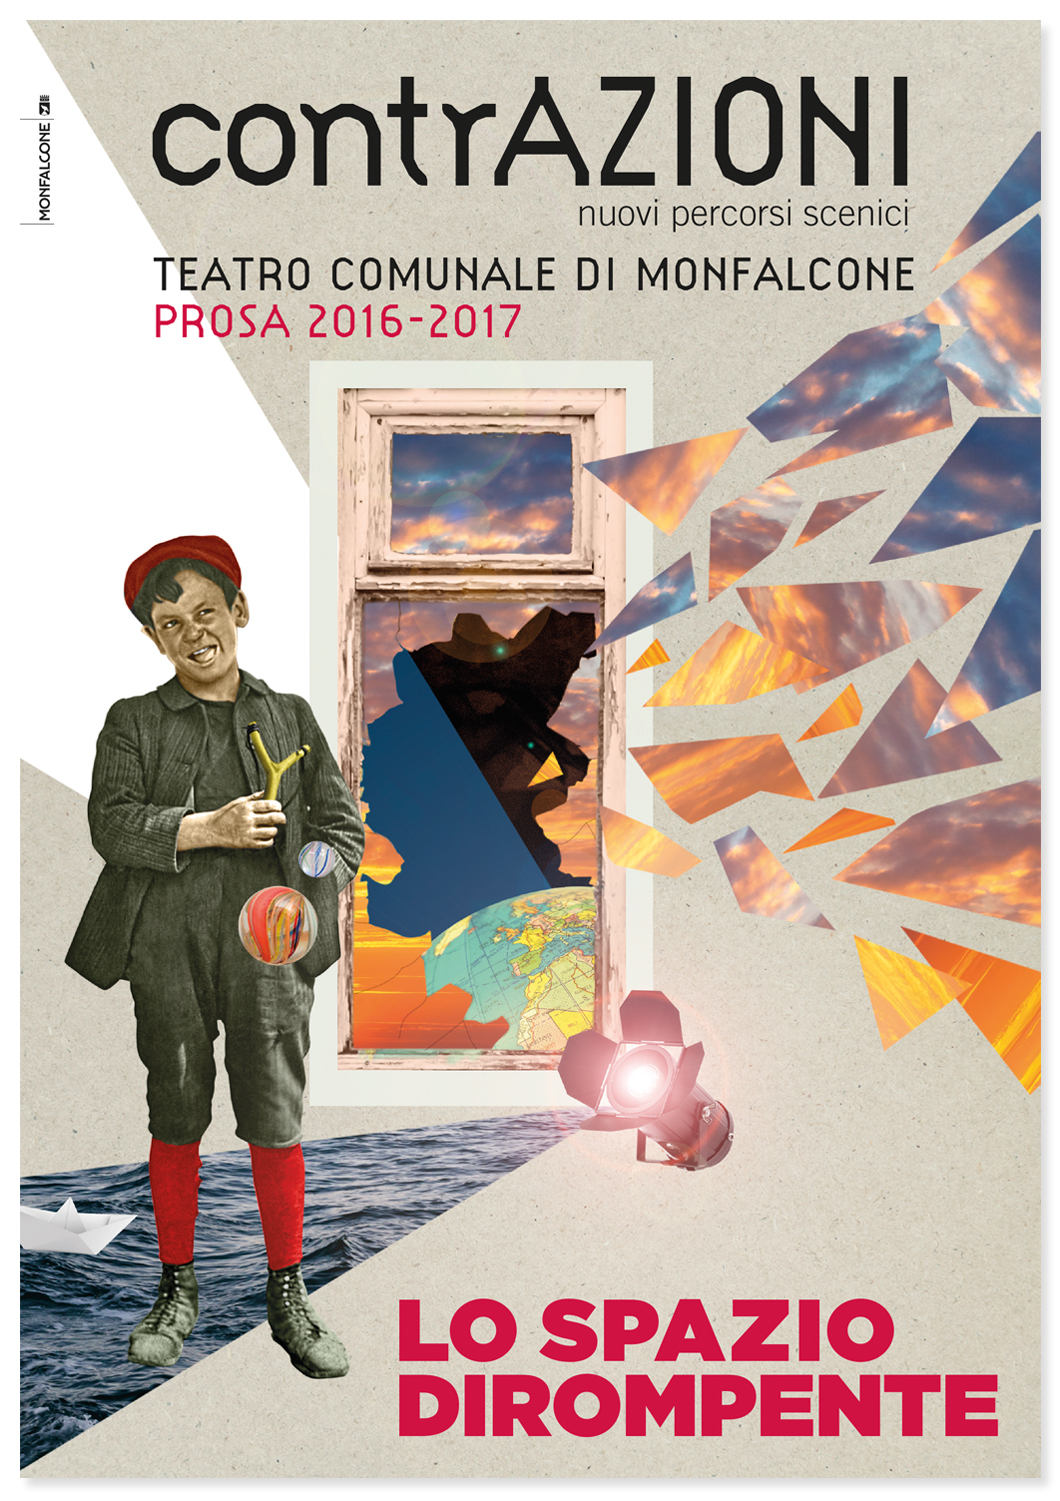 Teatro Comunale di Monfalcone - Stagione 2016/2017